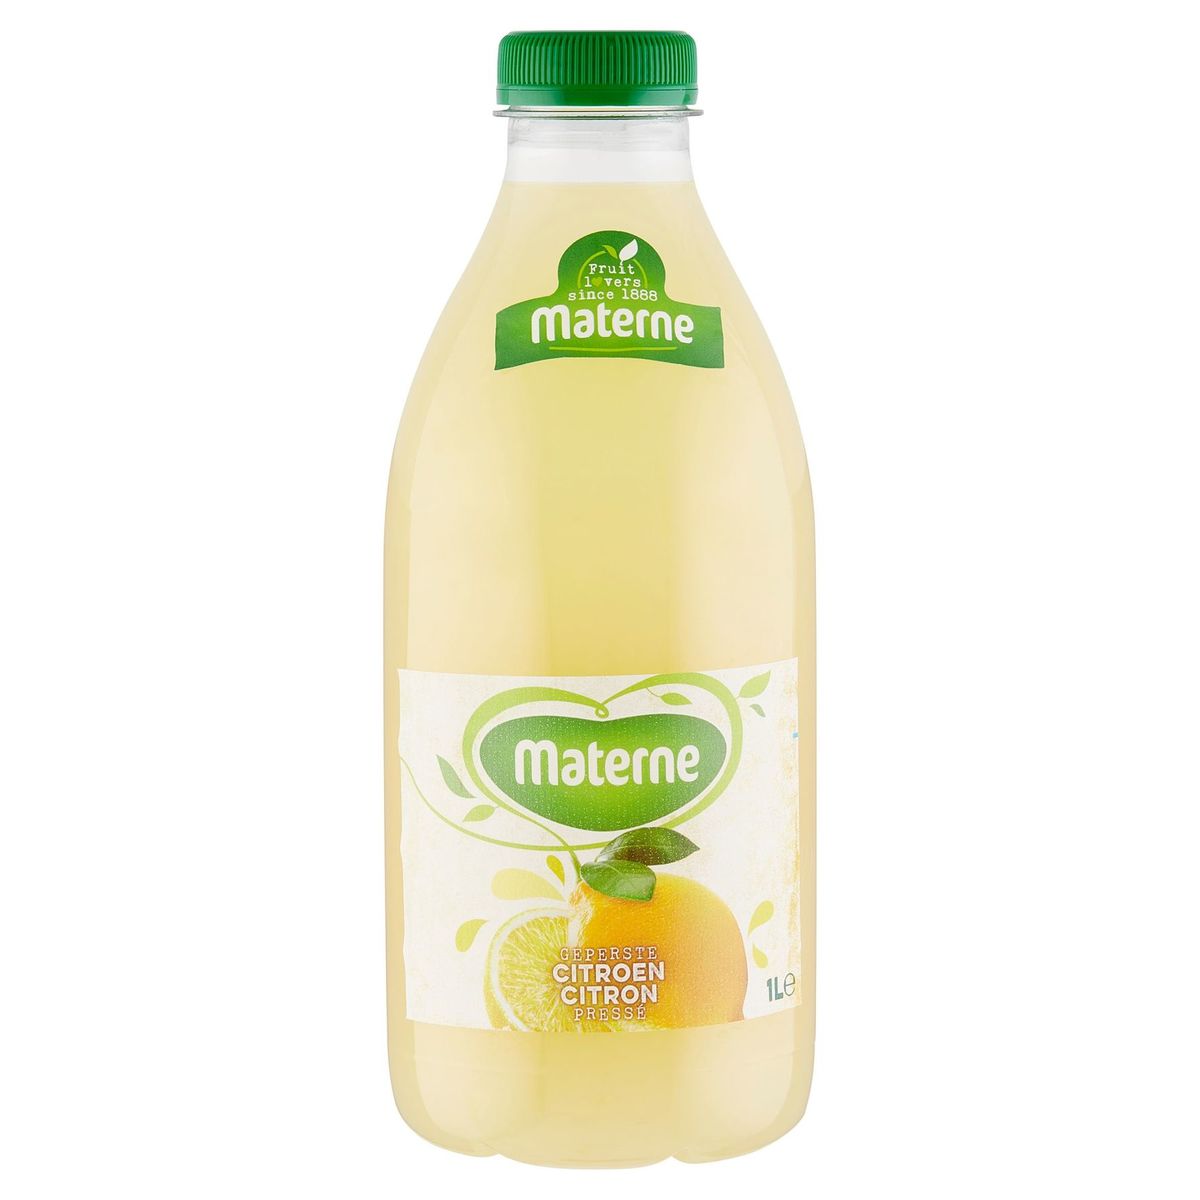 Materne Citron Pressé 1 L